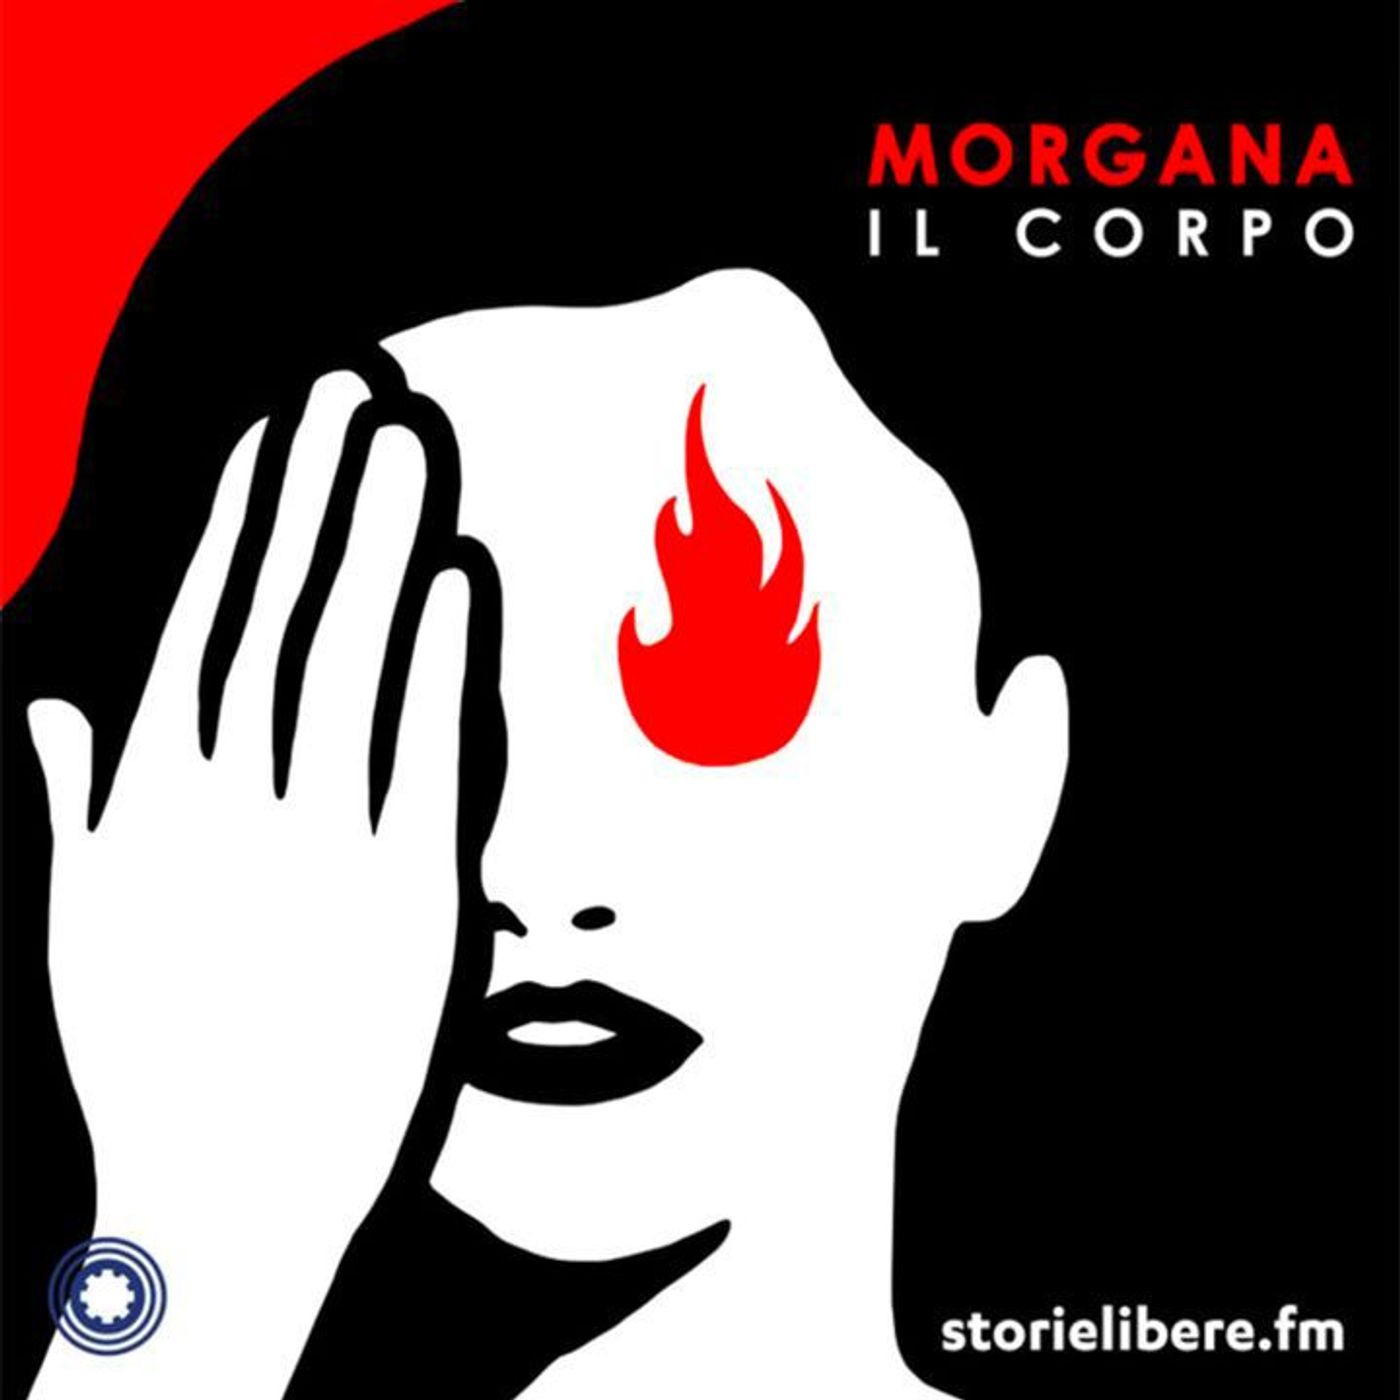 Copertina del podcast “Morgana”.